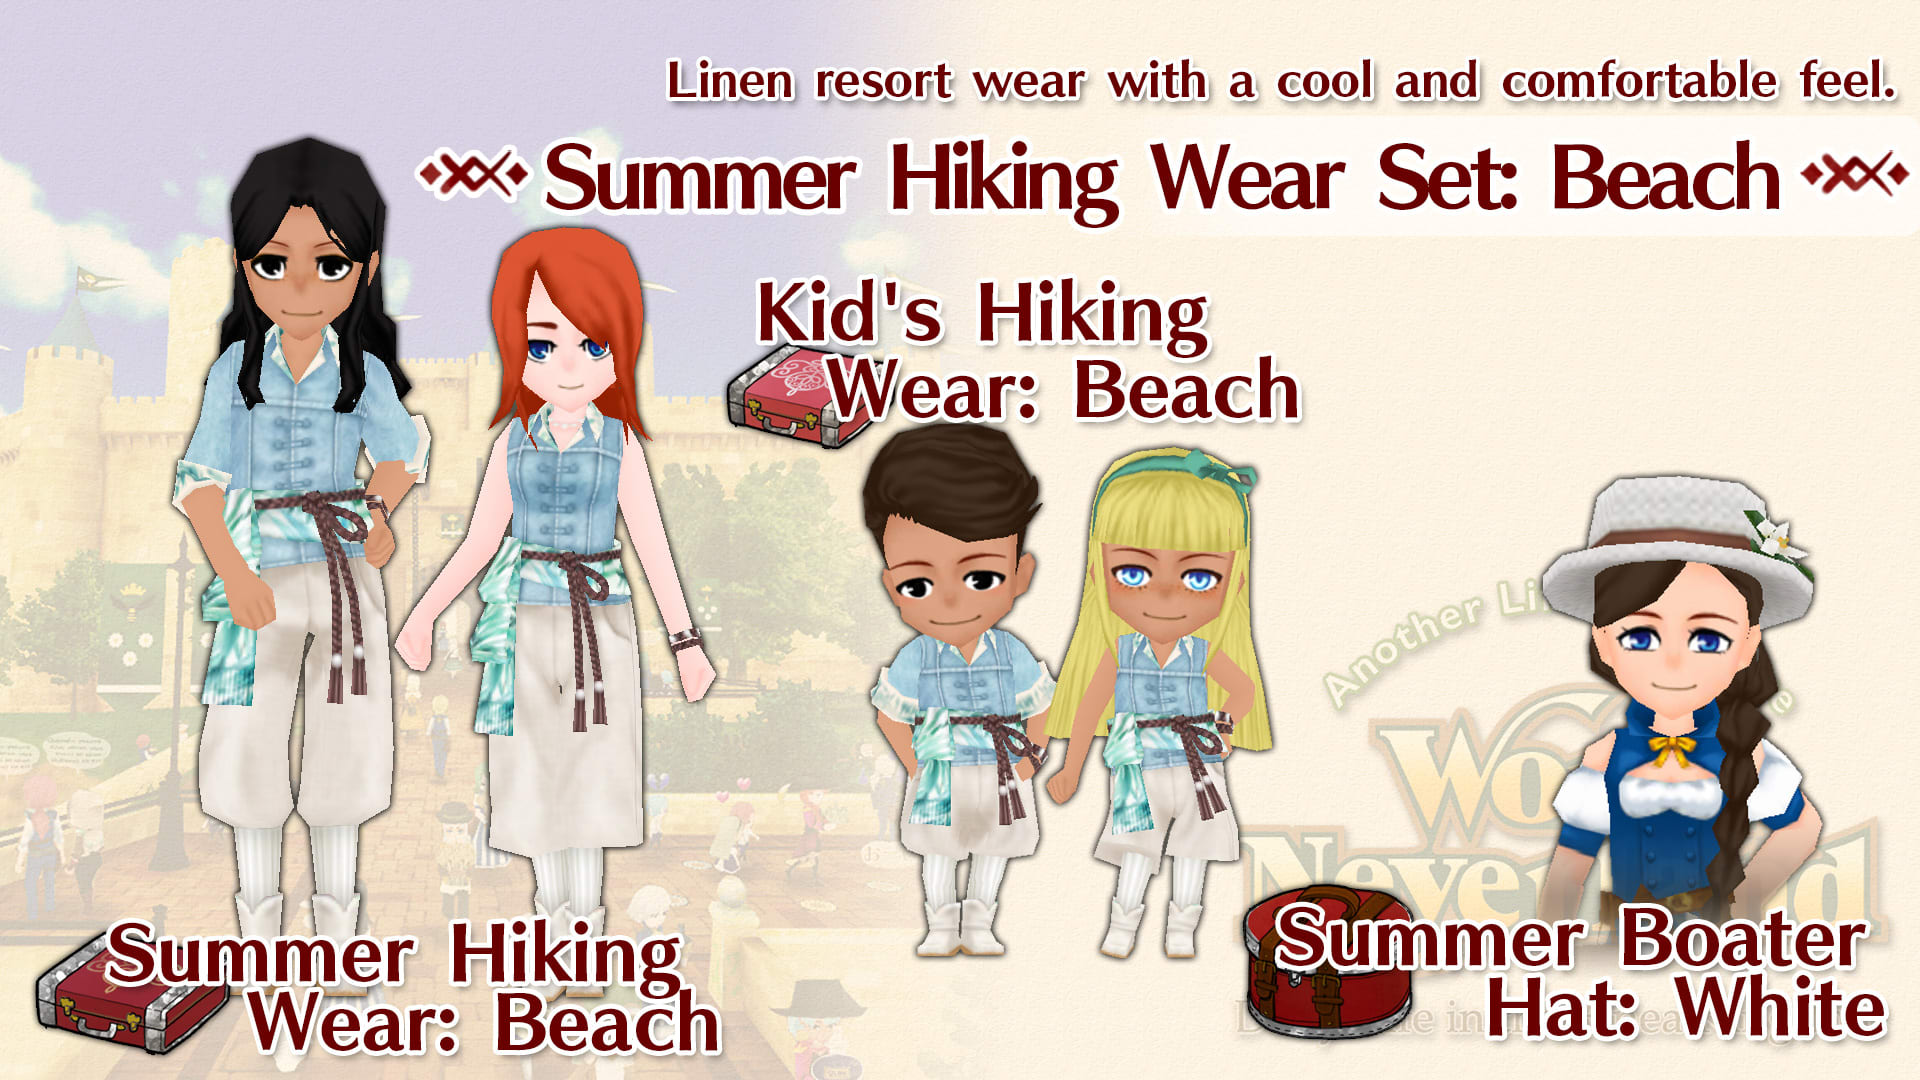 Summer Hiking Wear Set: Beach